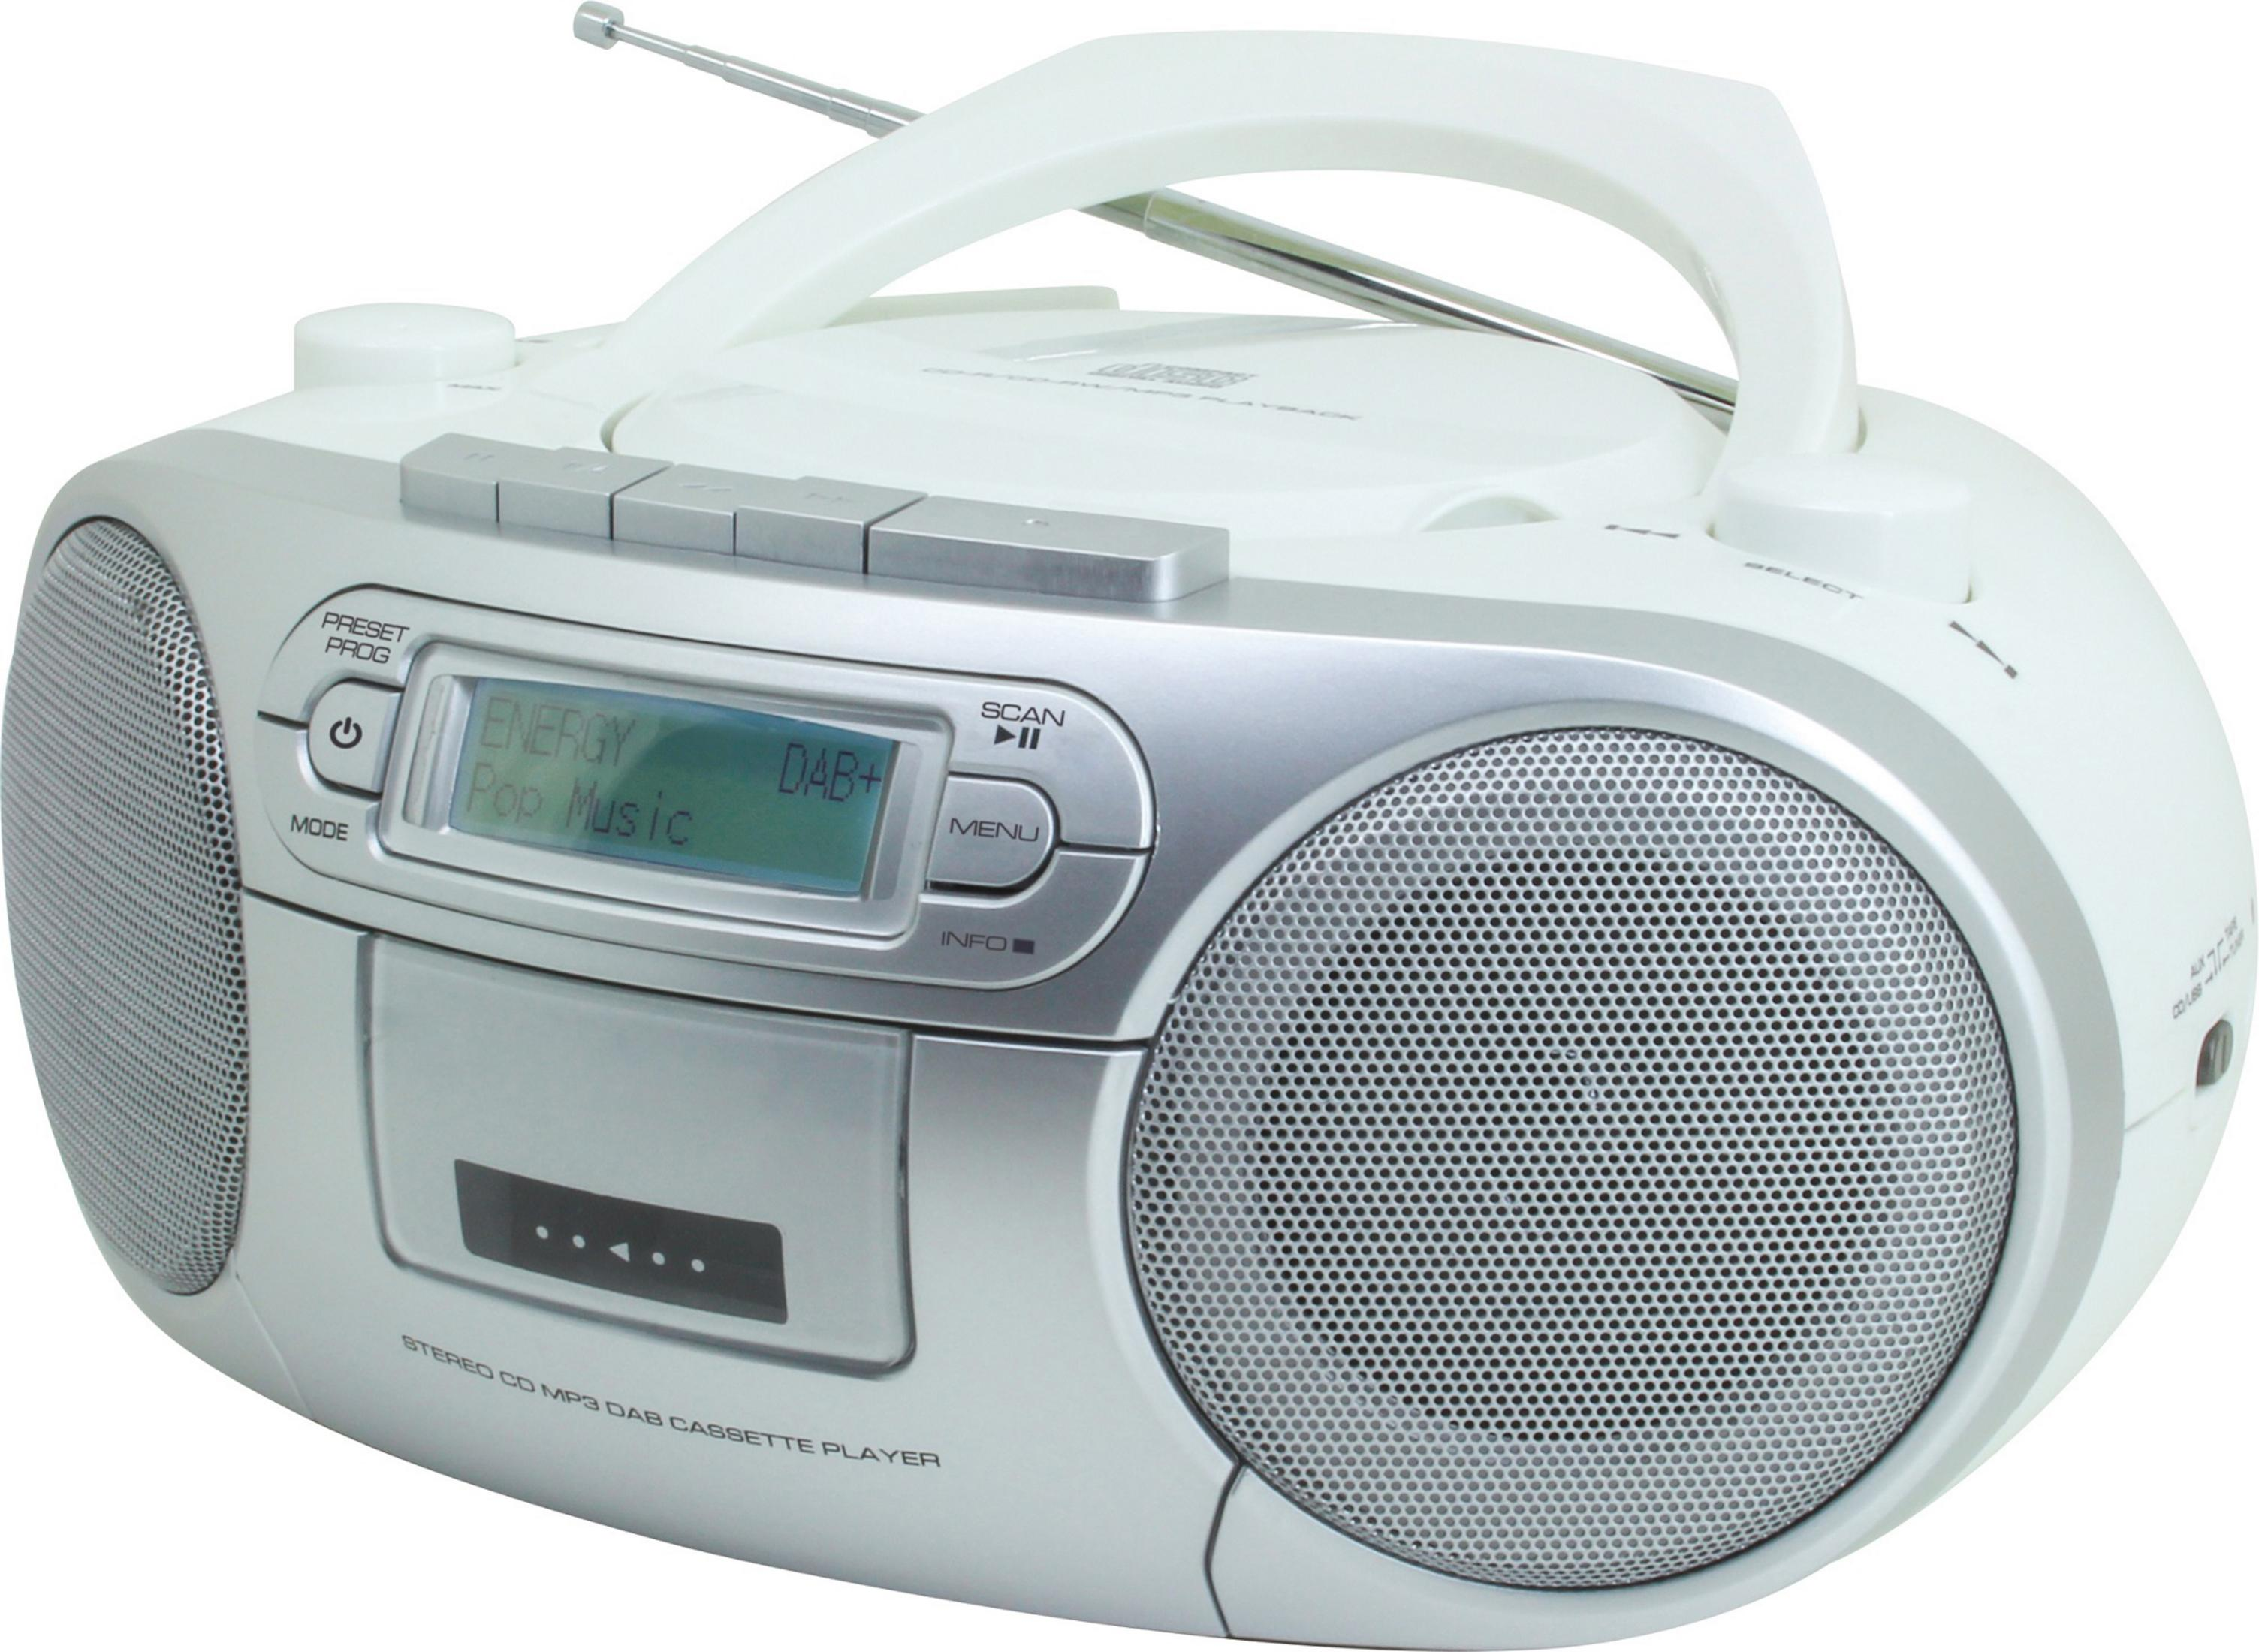 Radio, WE SOUNDMASTER Weiß/Silber SCD WEISS 7900